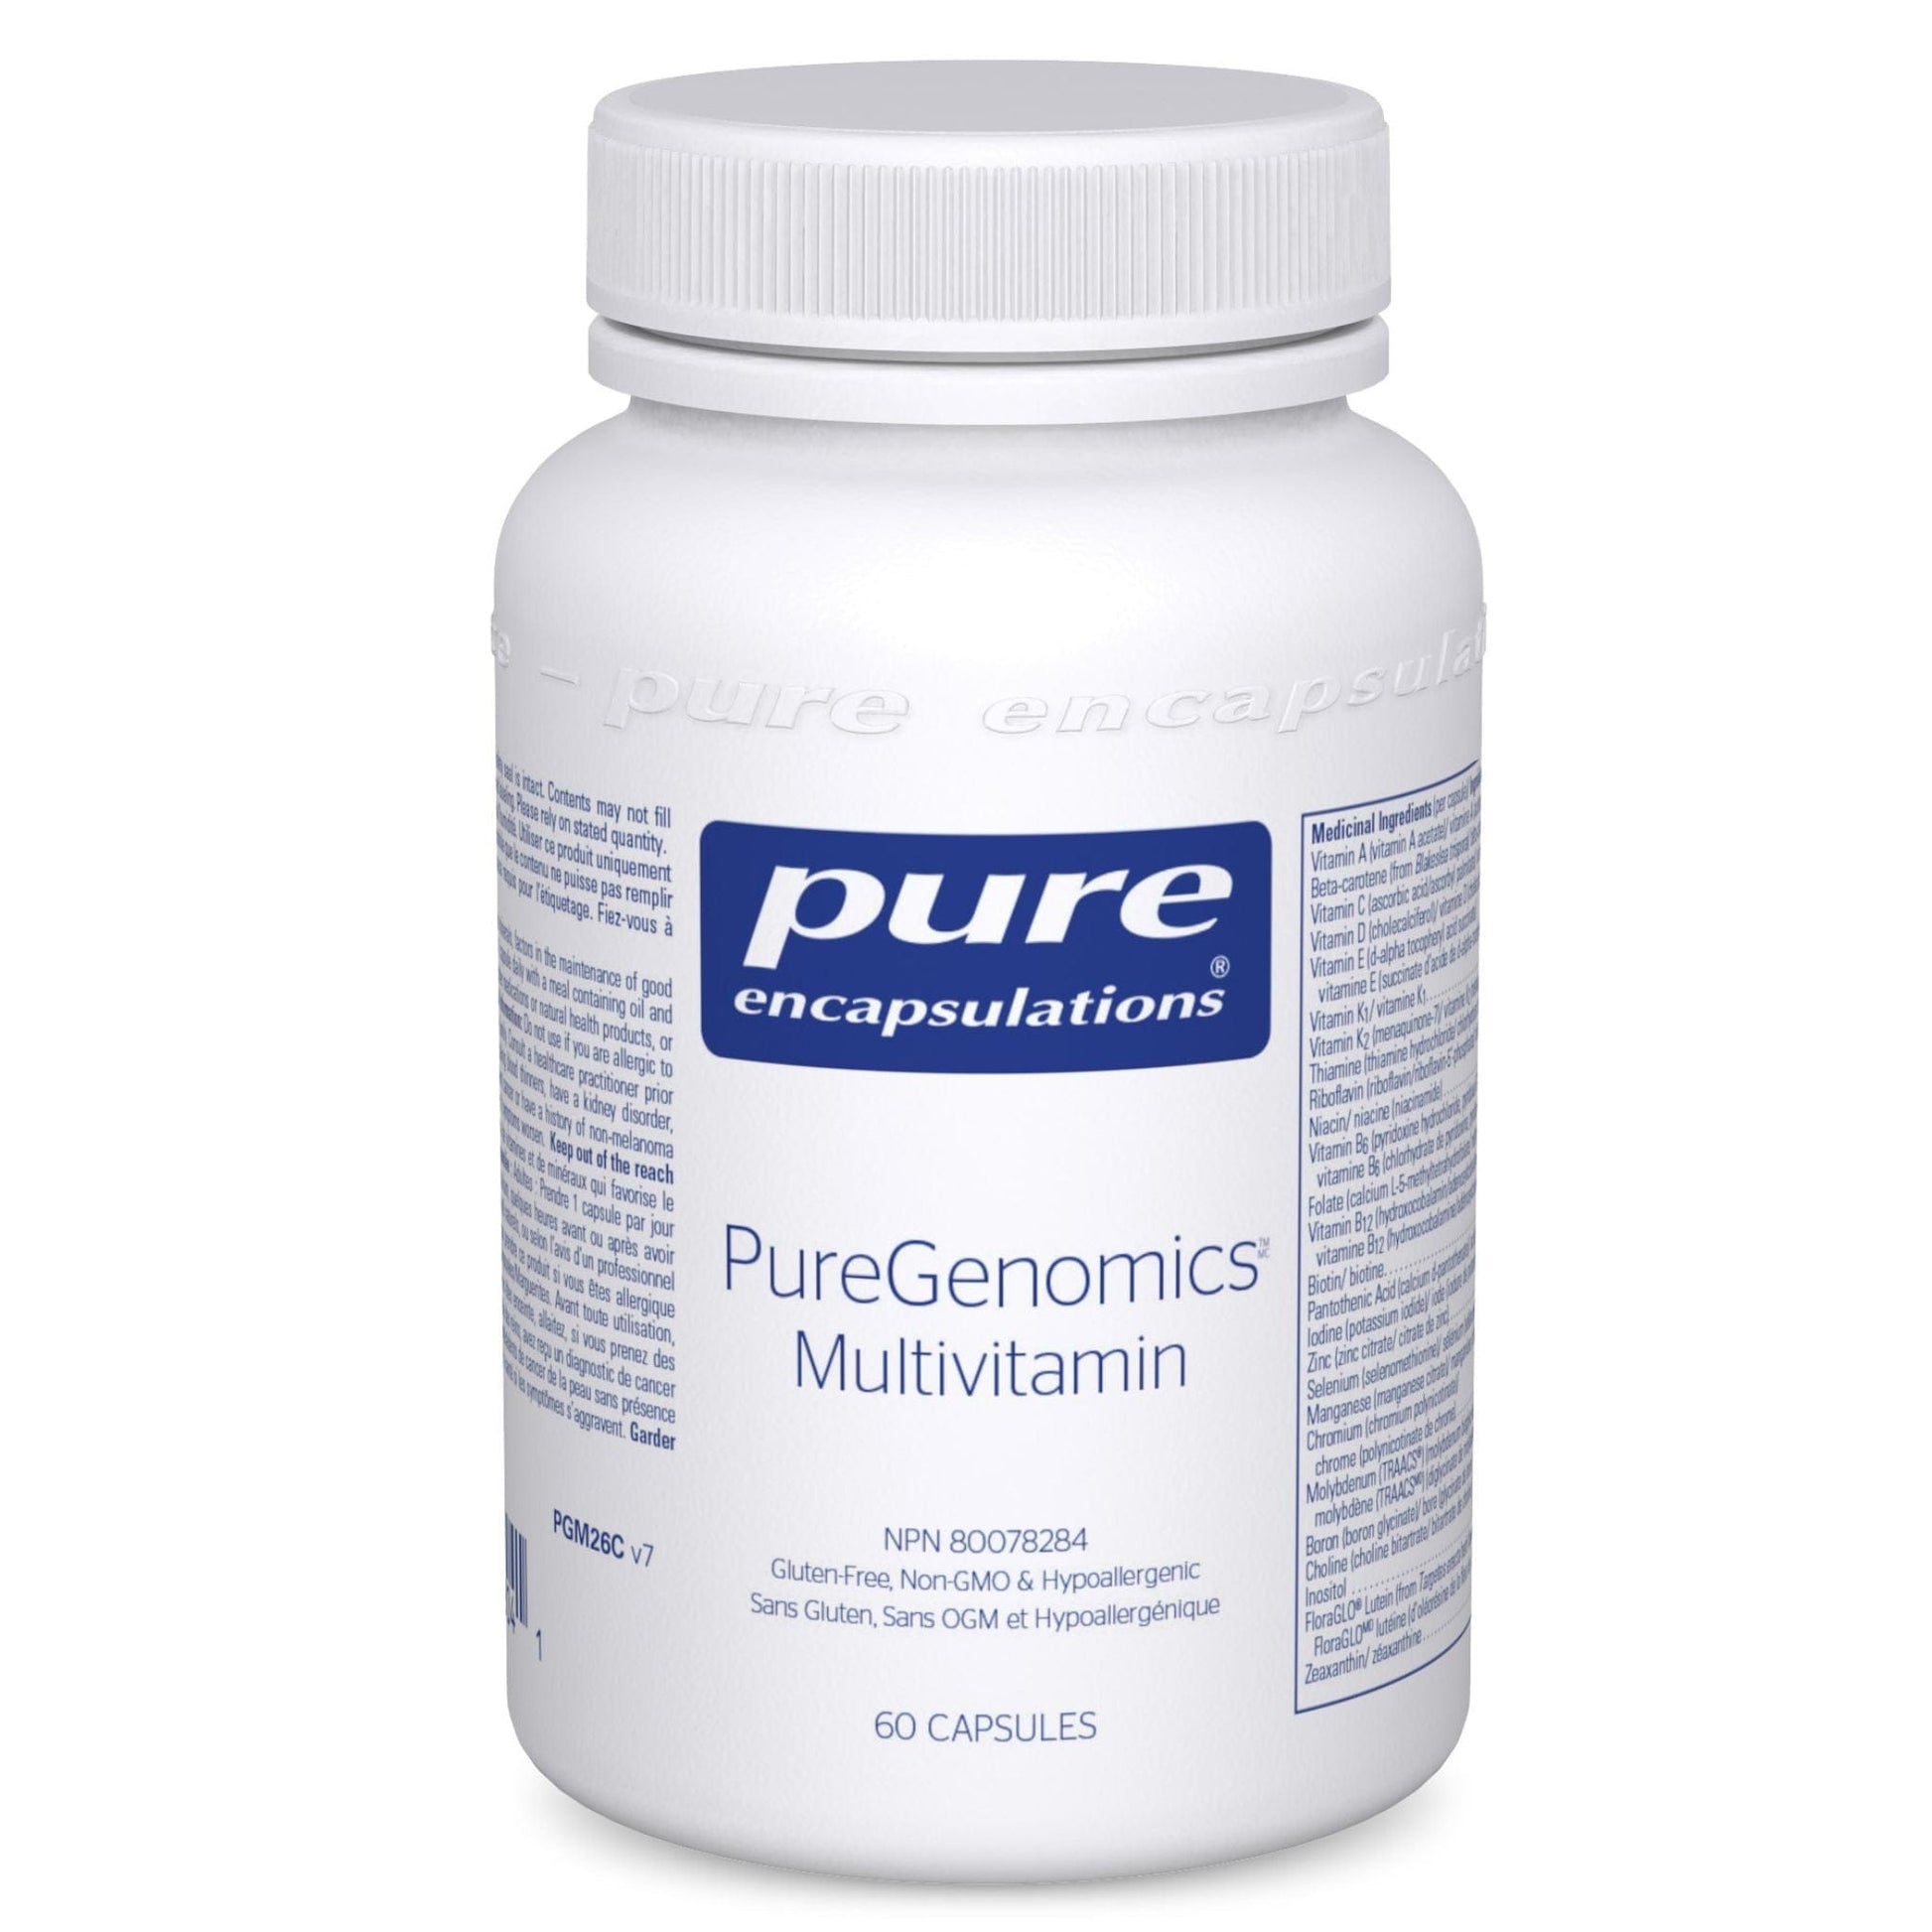 Pure Encapsulations PureGenomics Multivitamin 60 capsules